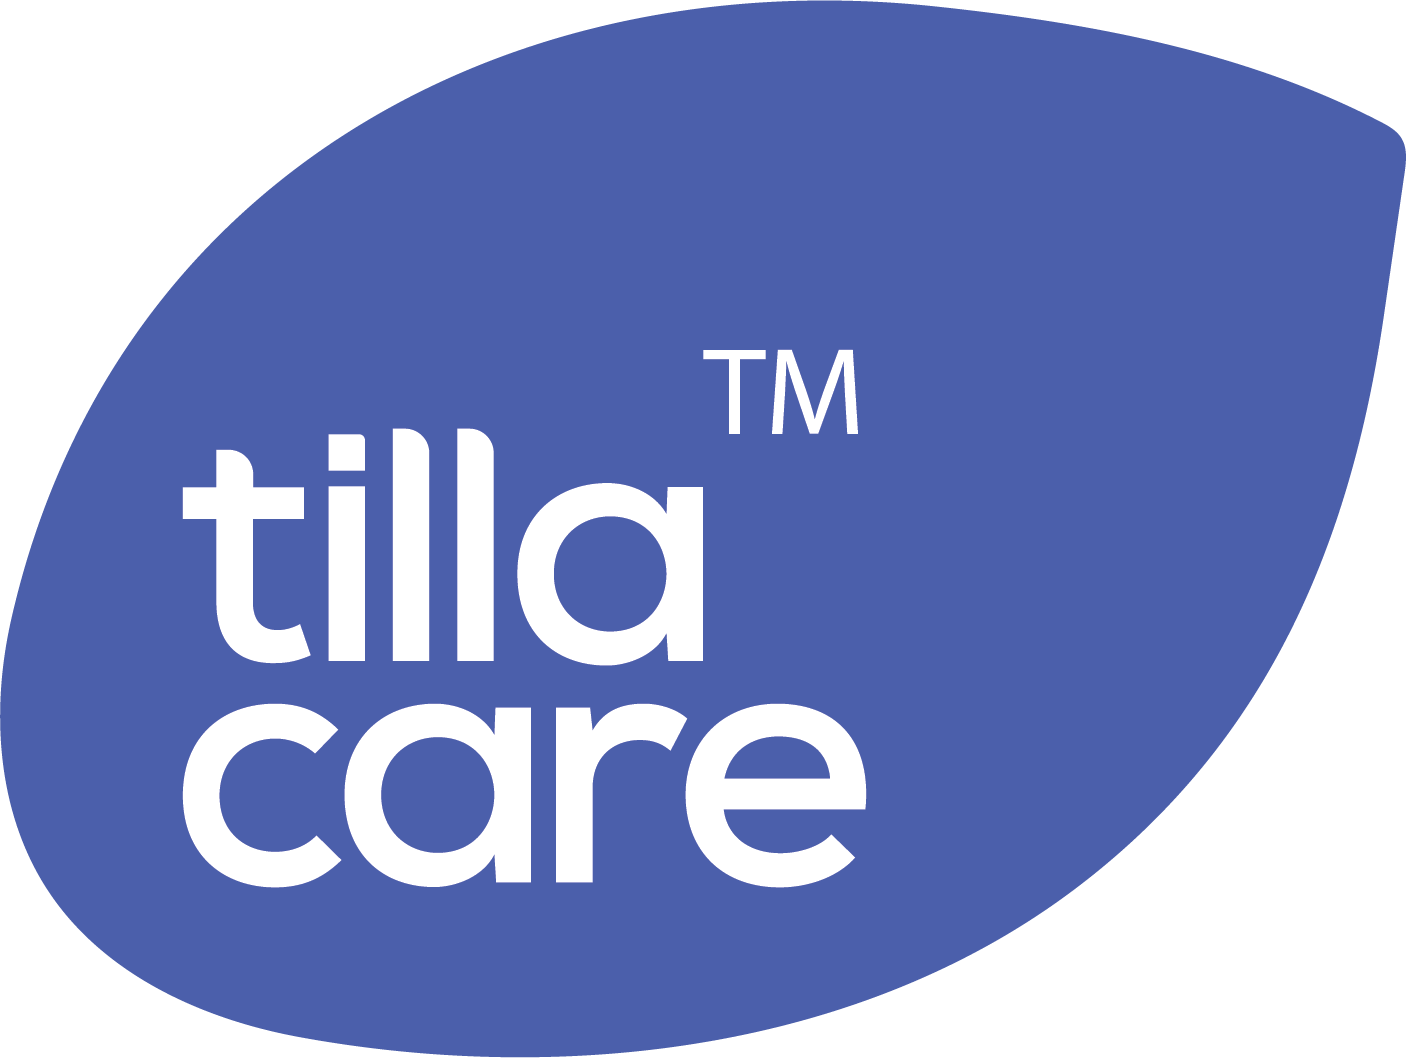 TillaCare Logo